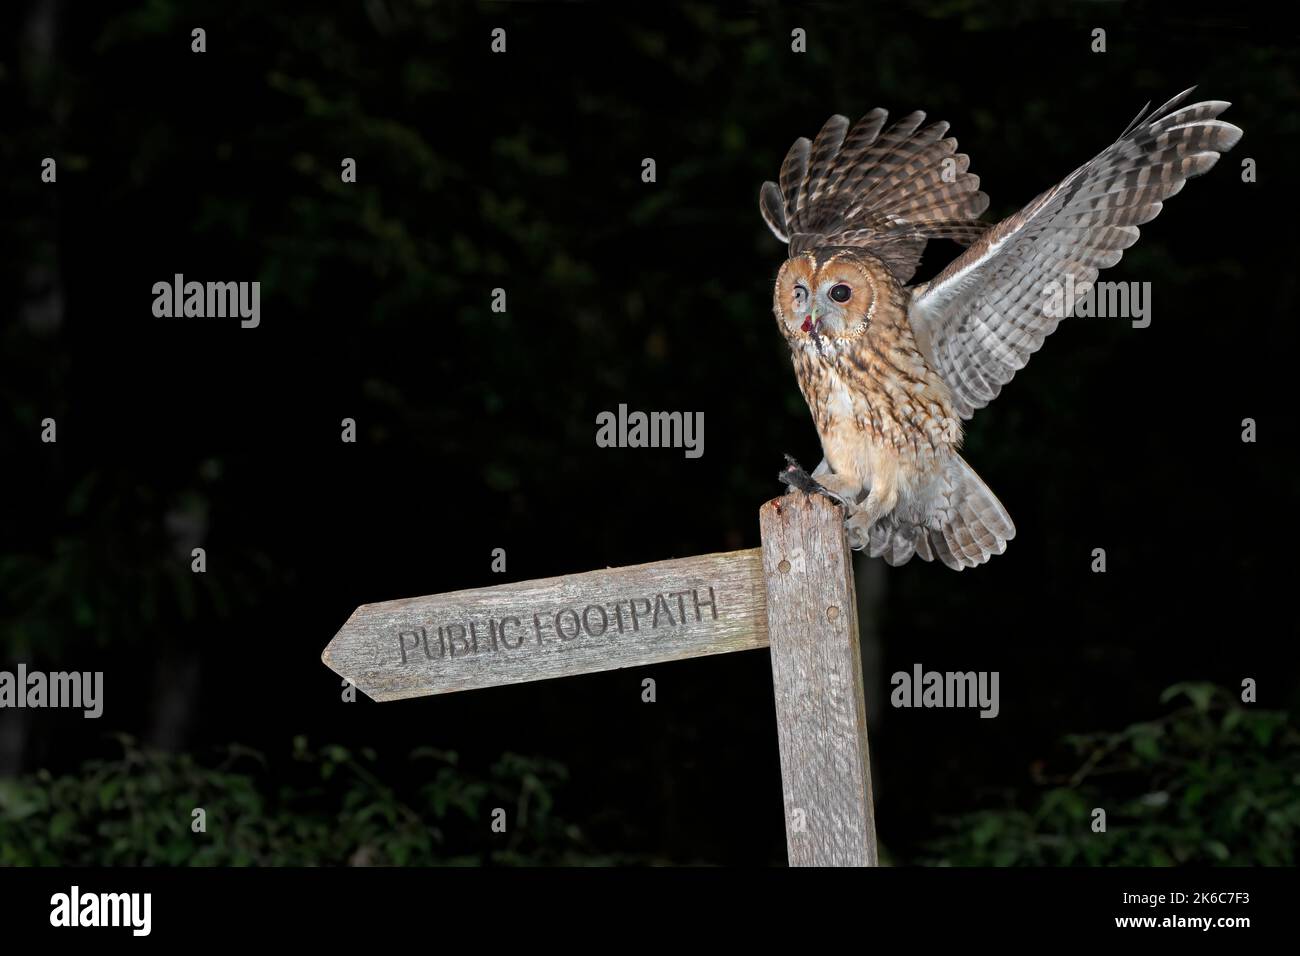 Tawny Owl-Strix aluco feeds on mouse. Stock Photo